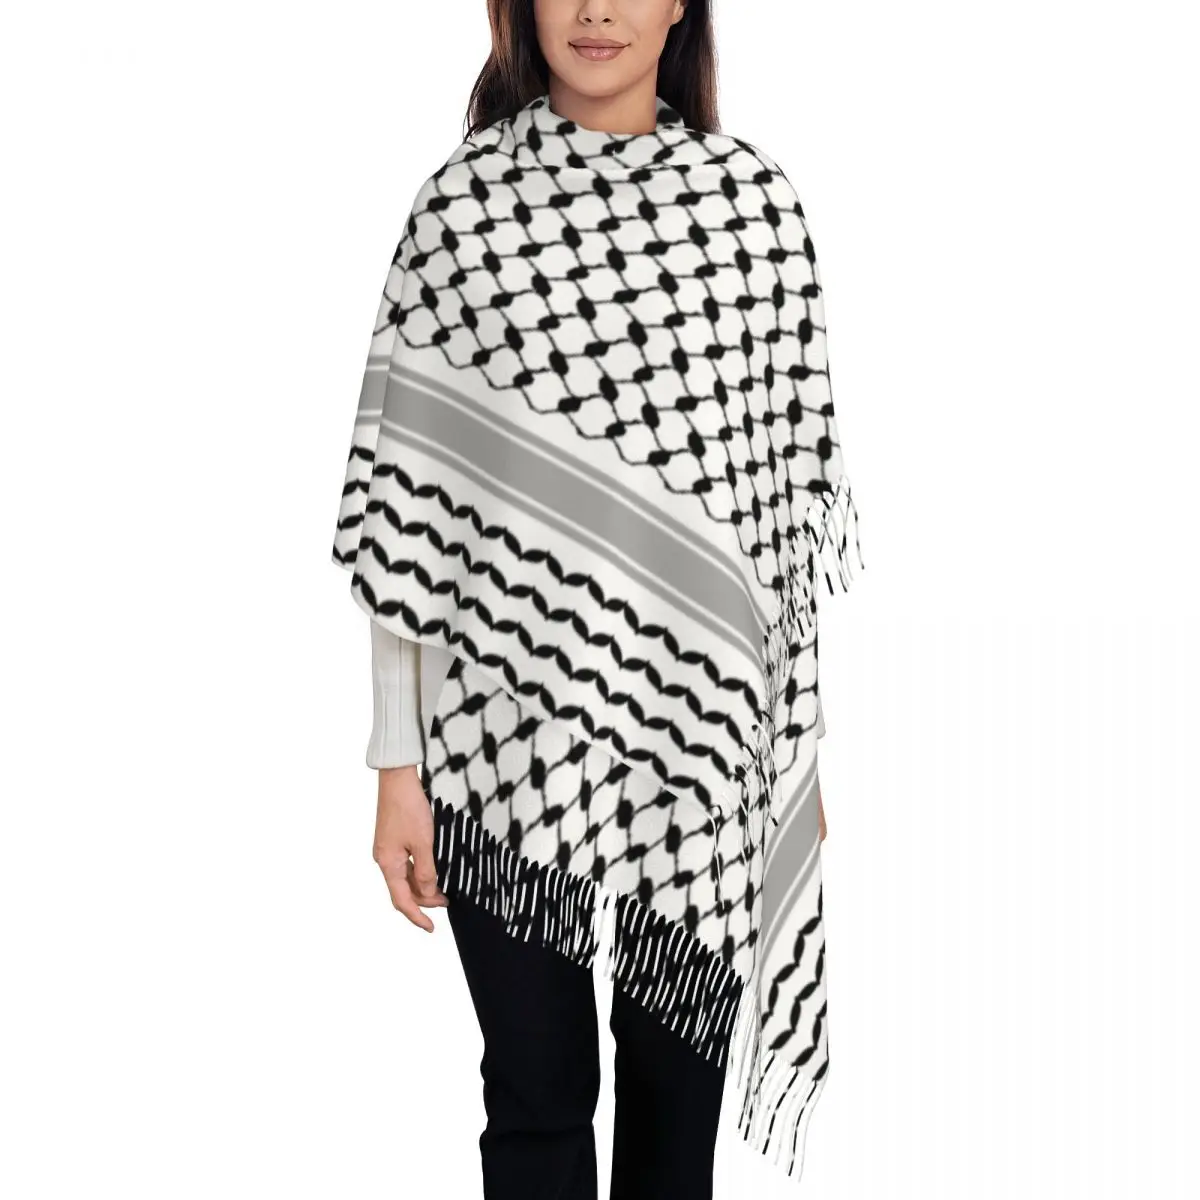 

Palestinian Hatta Kufiya Folk Scarf Wrap for Women Long Winter Fall Warm Tassel Shawl Unisex Palestine Keffiyeh Scarves